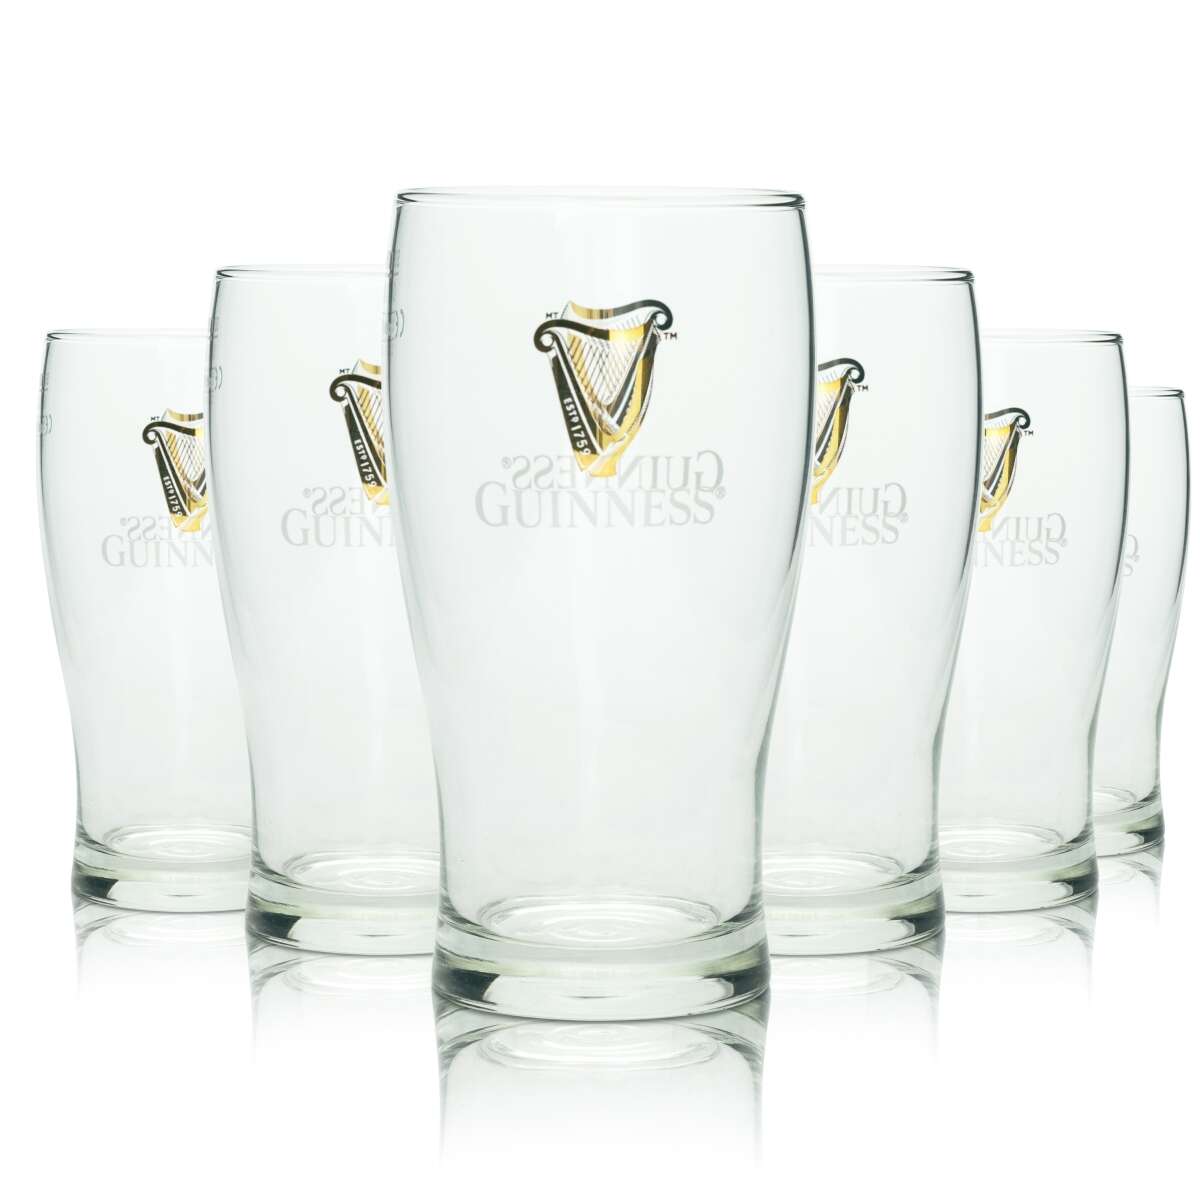 https://barmeister24.de/media/image/product/4575/lg/6x-guinness-bier-glas-04l-tulip-becher-sahm-glaeser-logo-pint-doppel-beer-bar.jpg